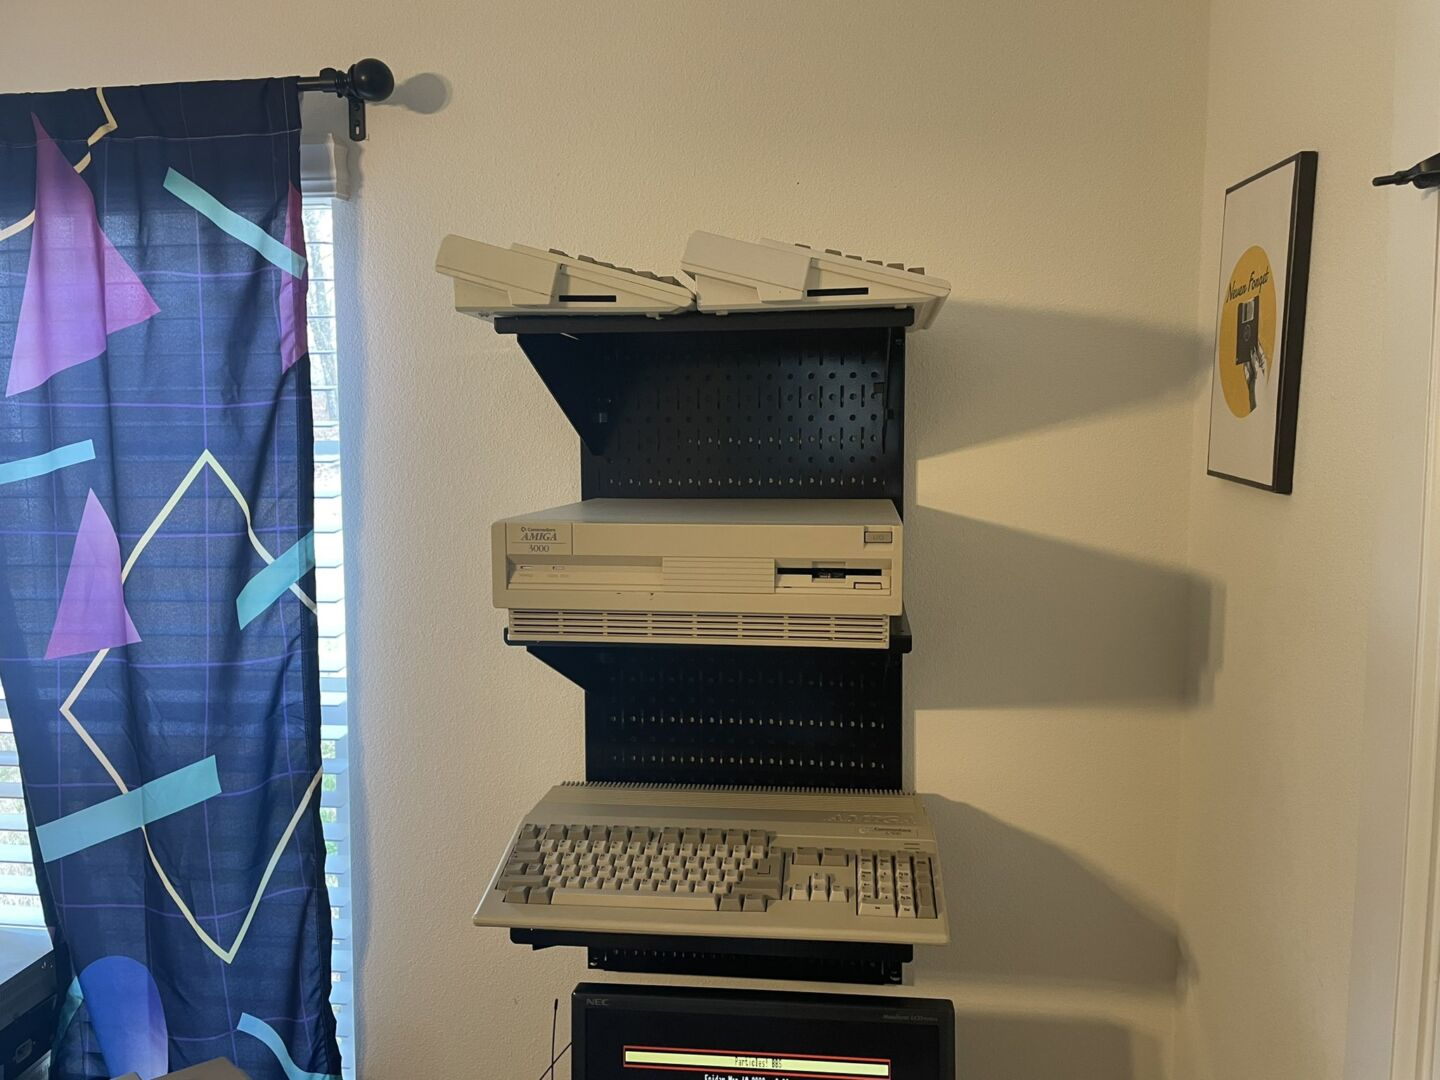 Рядом с окном, закрытым ретро-занавесками, Грин установил полку с Amiga 500, Amiga 3000 и двумя компьютерами Amiga 600.